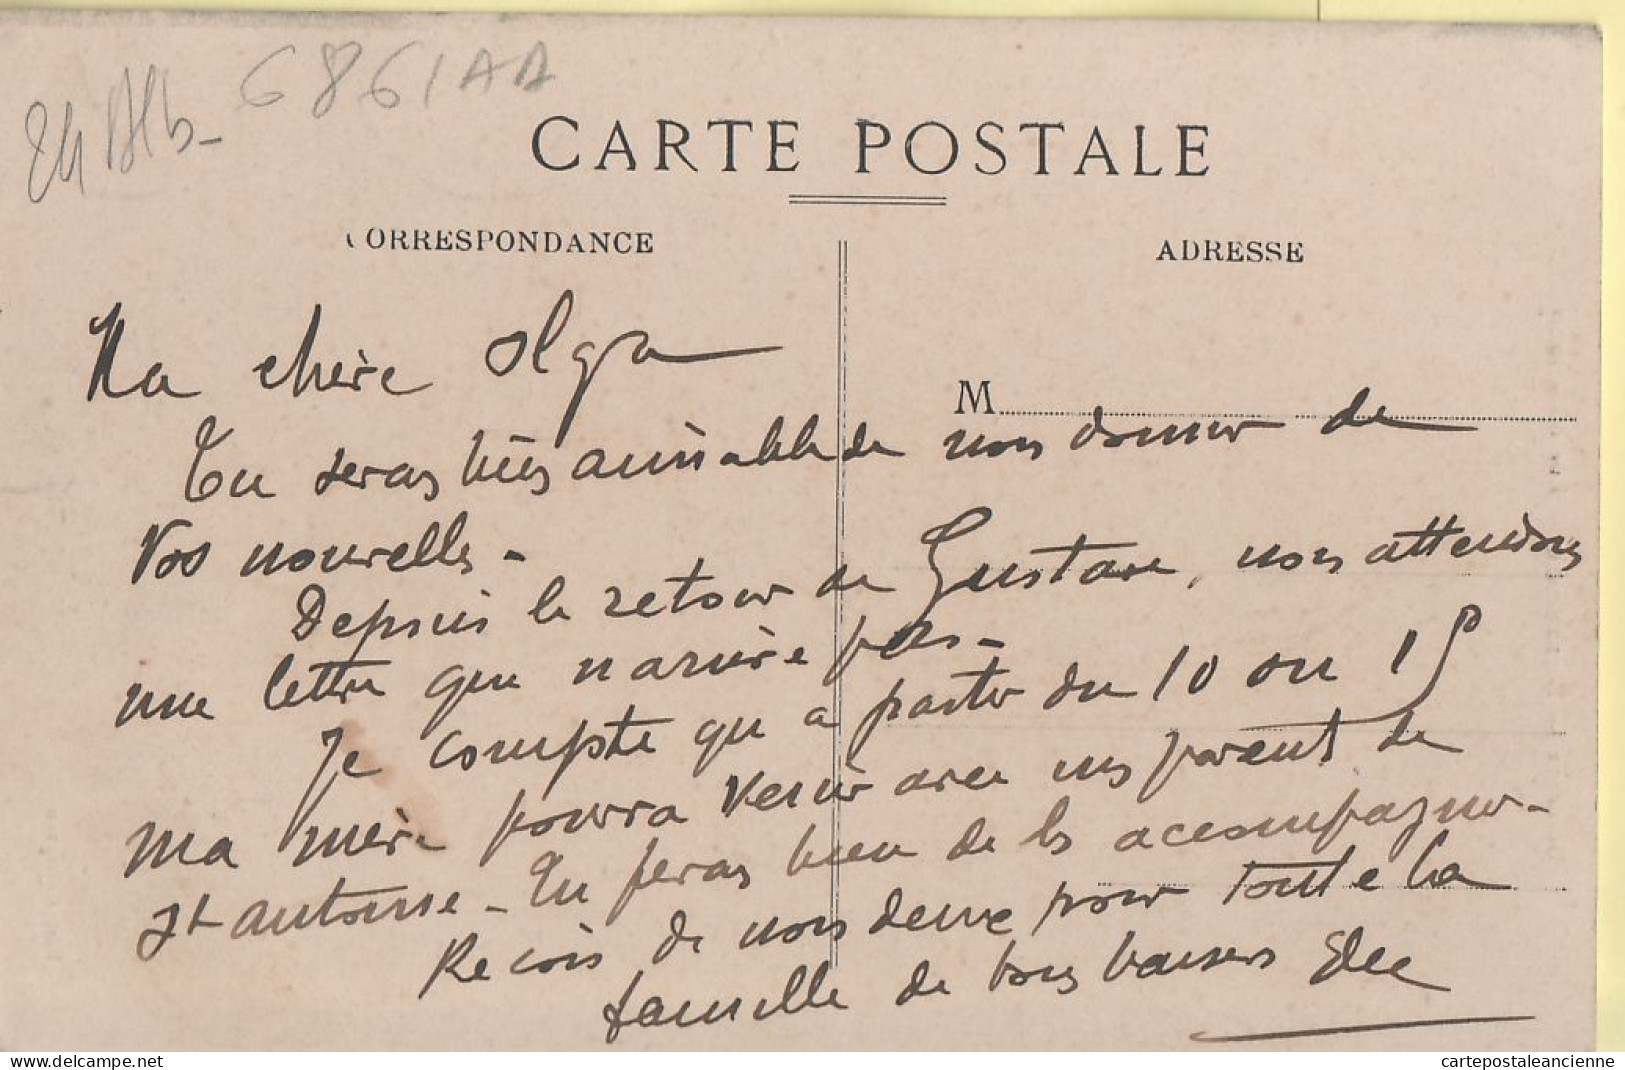 01312 / SARRAZAC Dordogne RUE De La POSTE Animation Villageoise Eglise Clocher  écrite 1910s - GALVAGNON - Autres & Non Classés